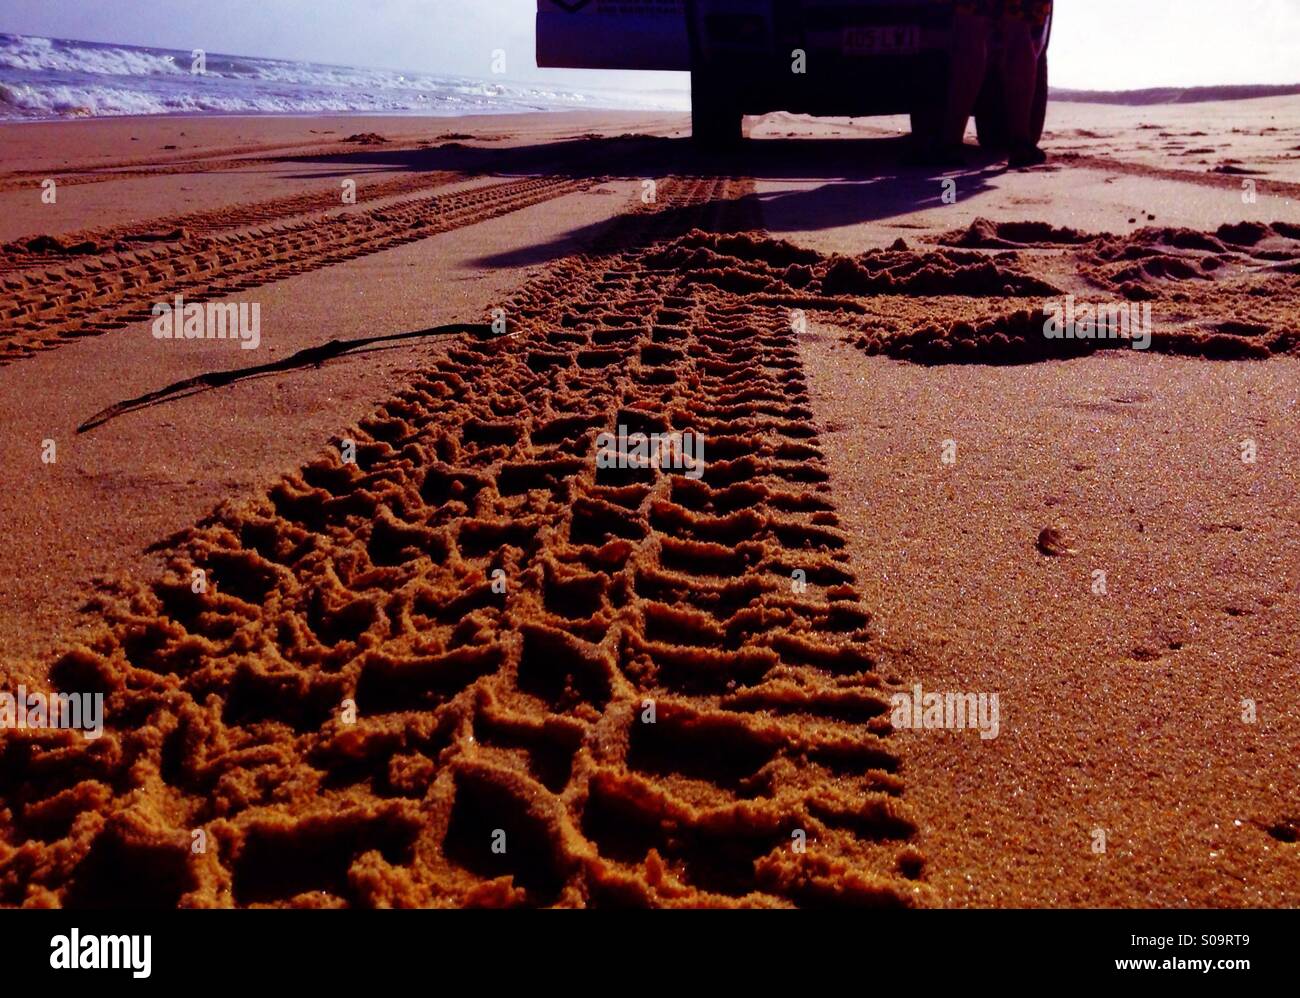 Tracks of a car on a sandy beach Stock Photo